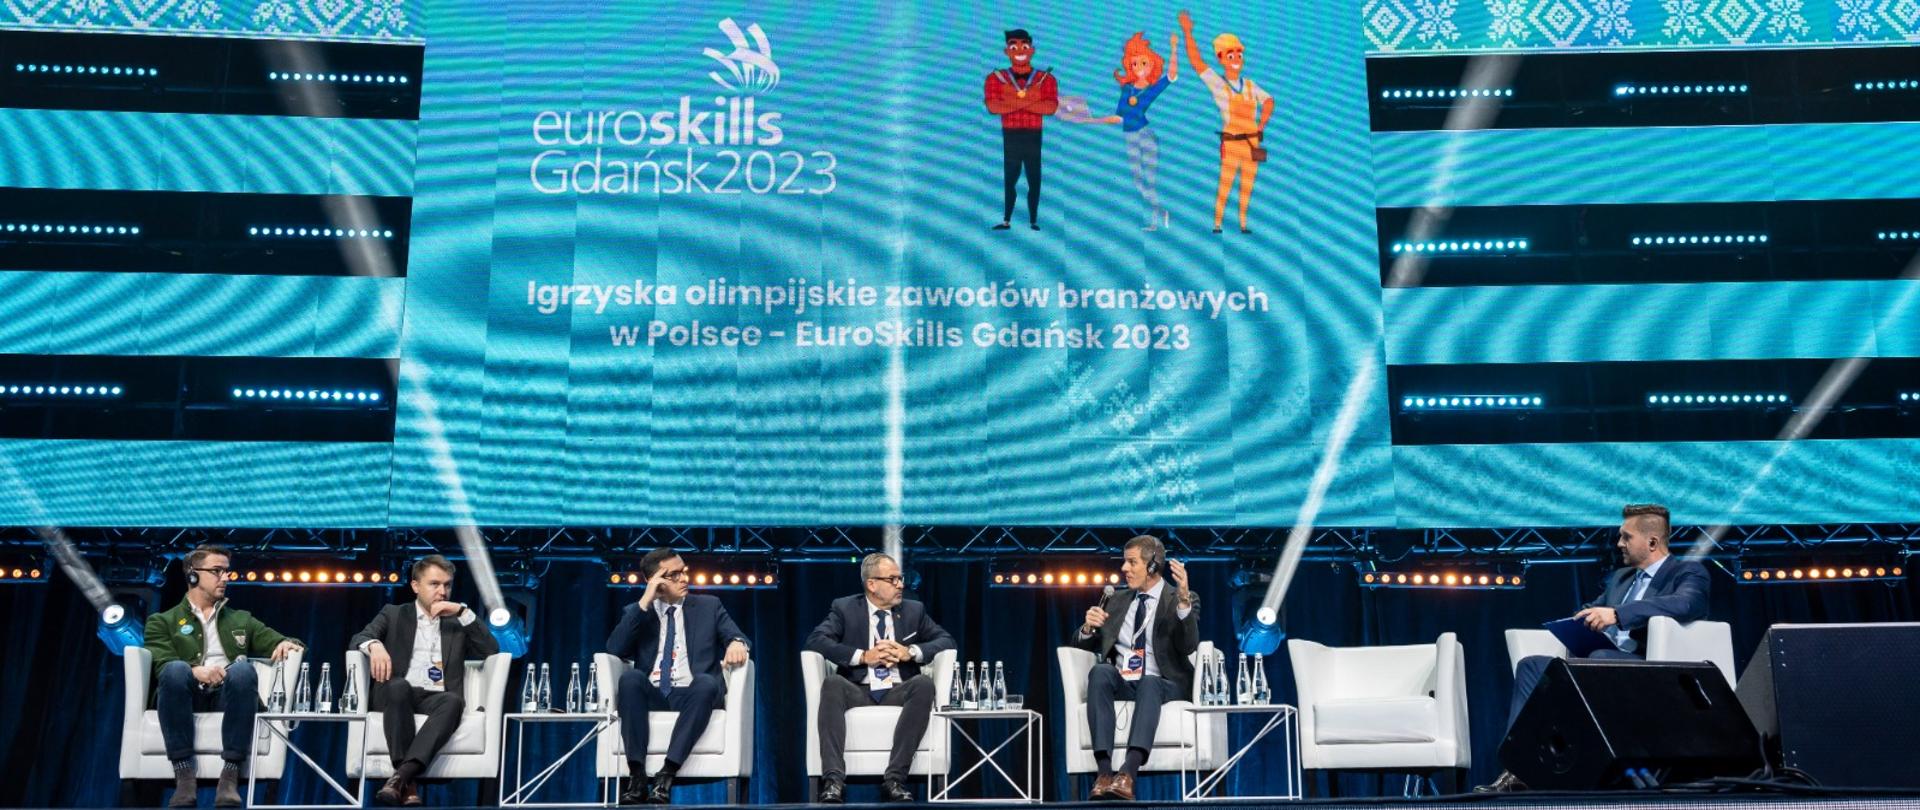 Na scenie 5 prelegentów i jeden prowadzący. Za nimi wyświetlana prezentacja na dużych telebimach z napisem: Igrzyska olimpijskie zawodów branżowych w Polsce - EuroskillsGdańsk2023. 